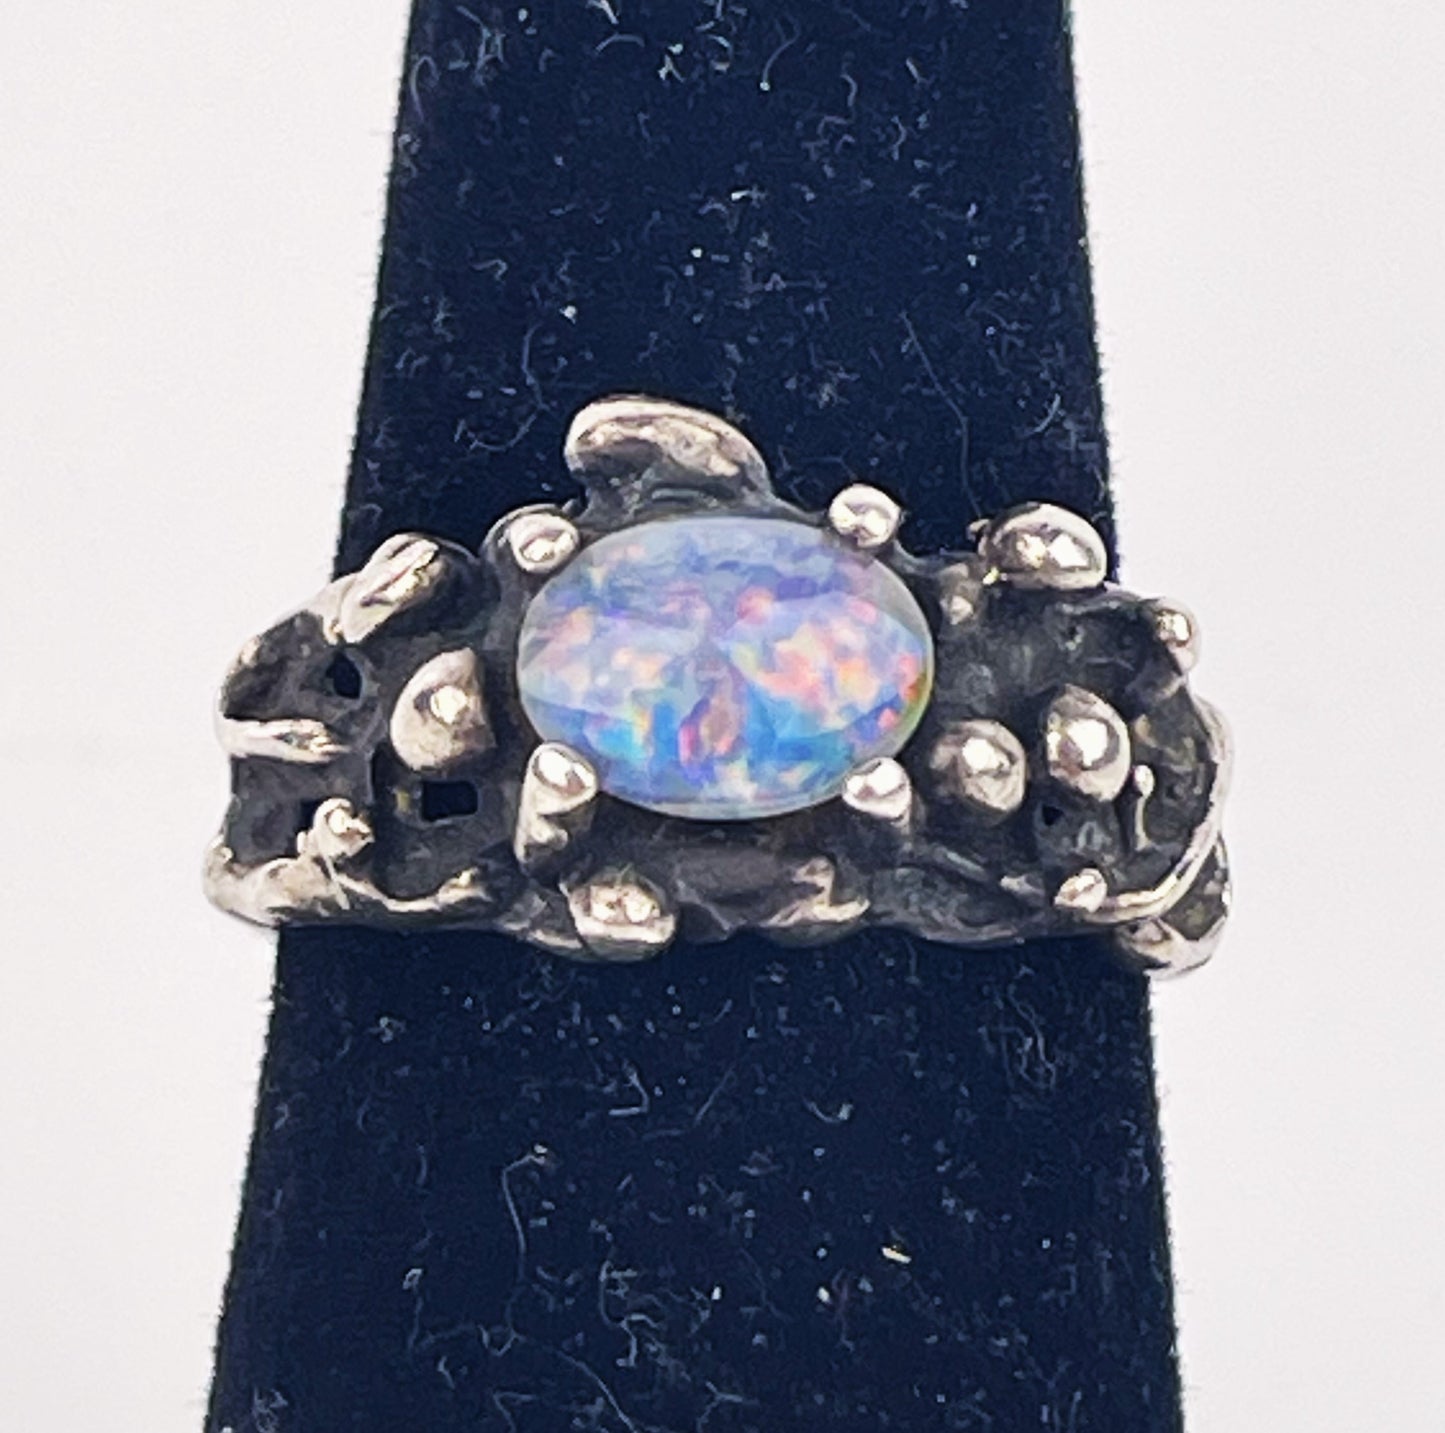 Vintage Opal Ring in Sterling Silver Brutalist/Modernist Setting